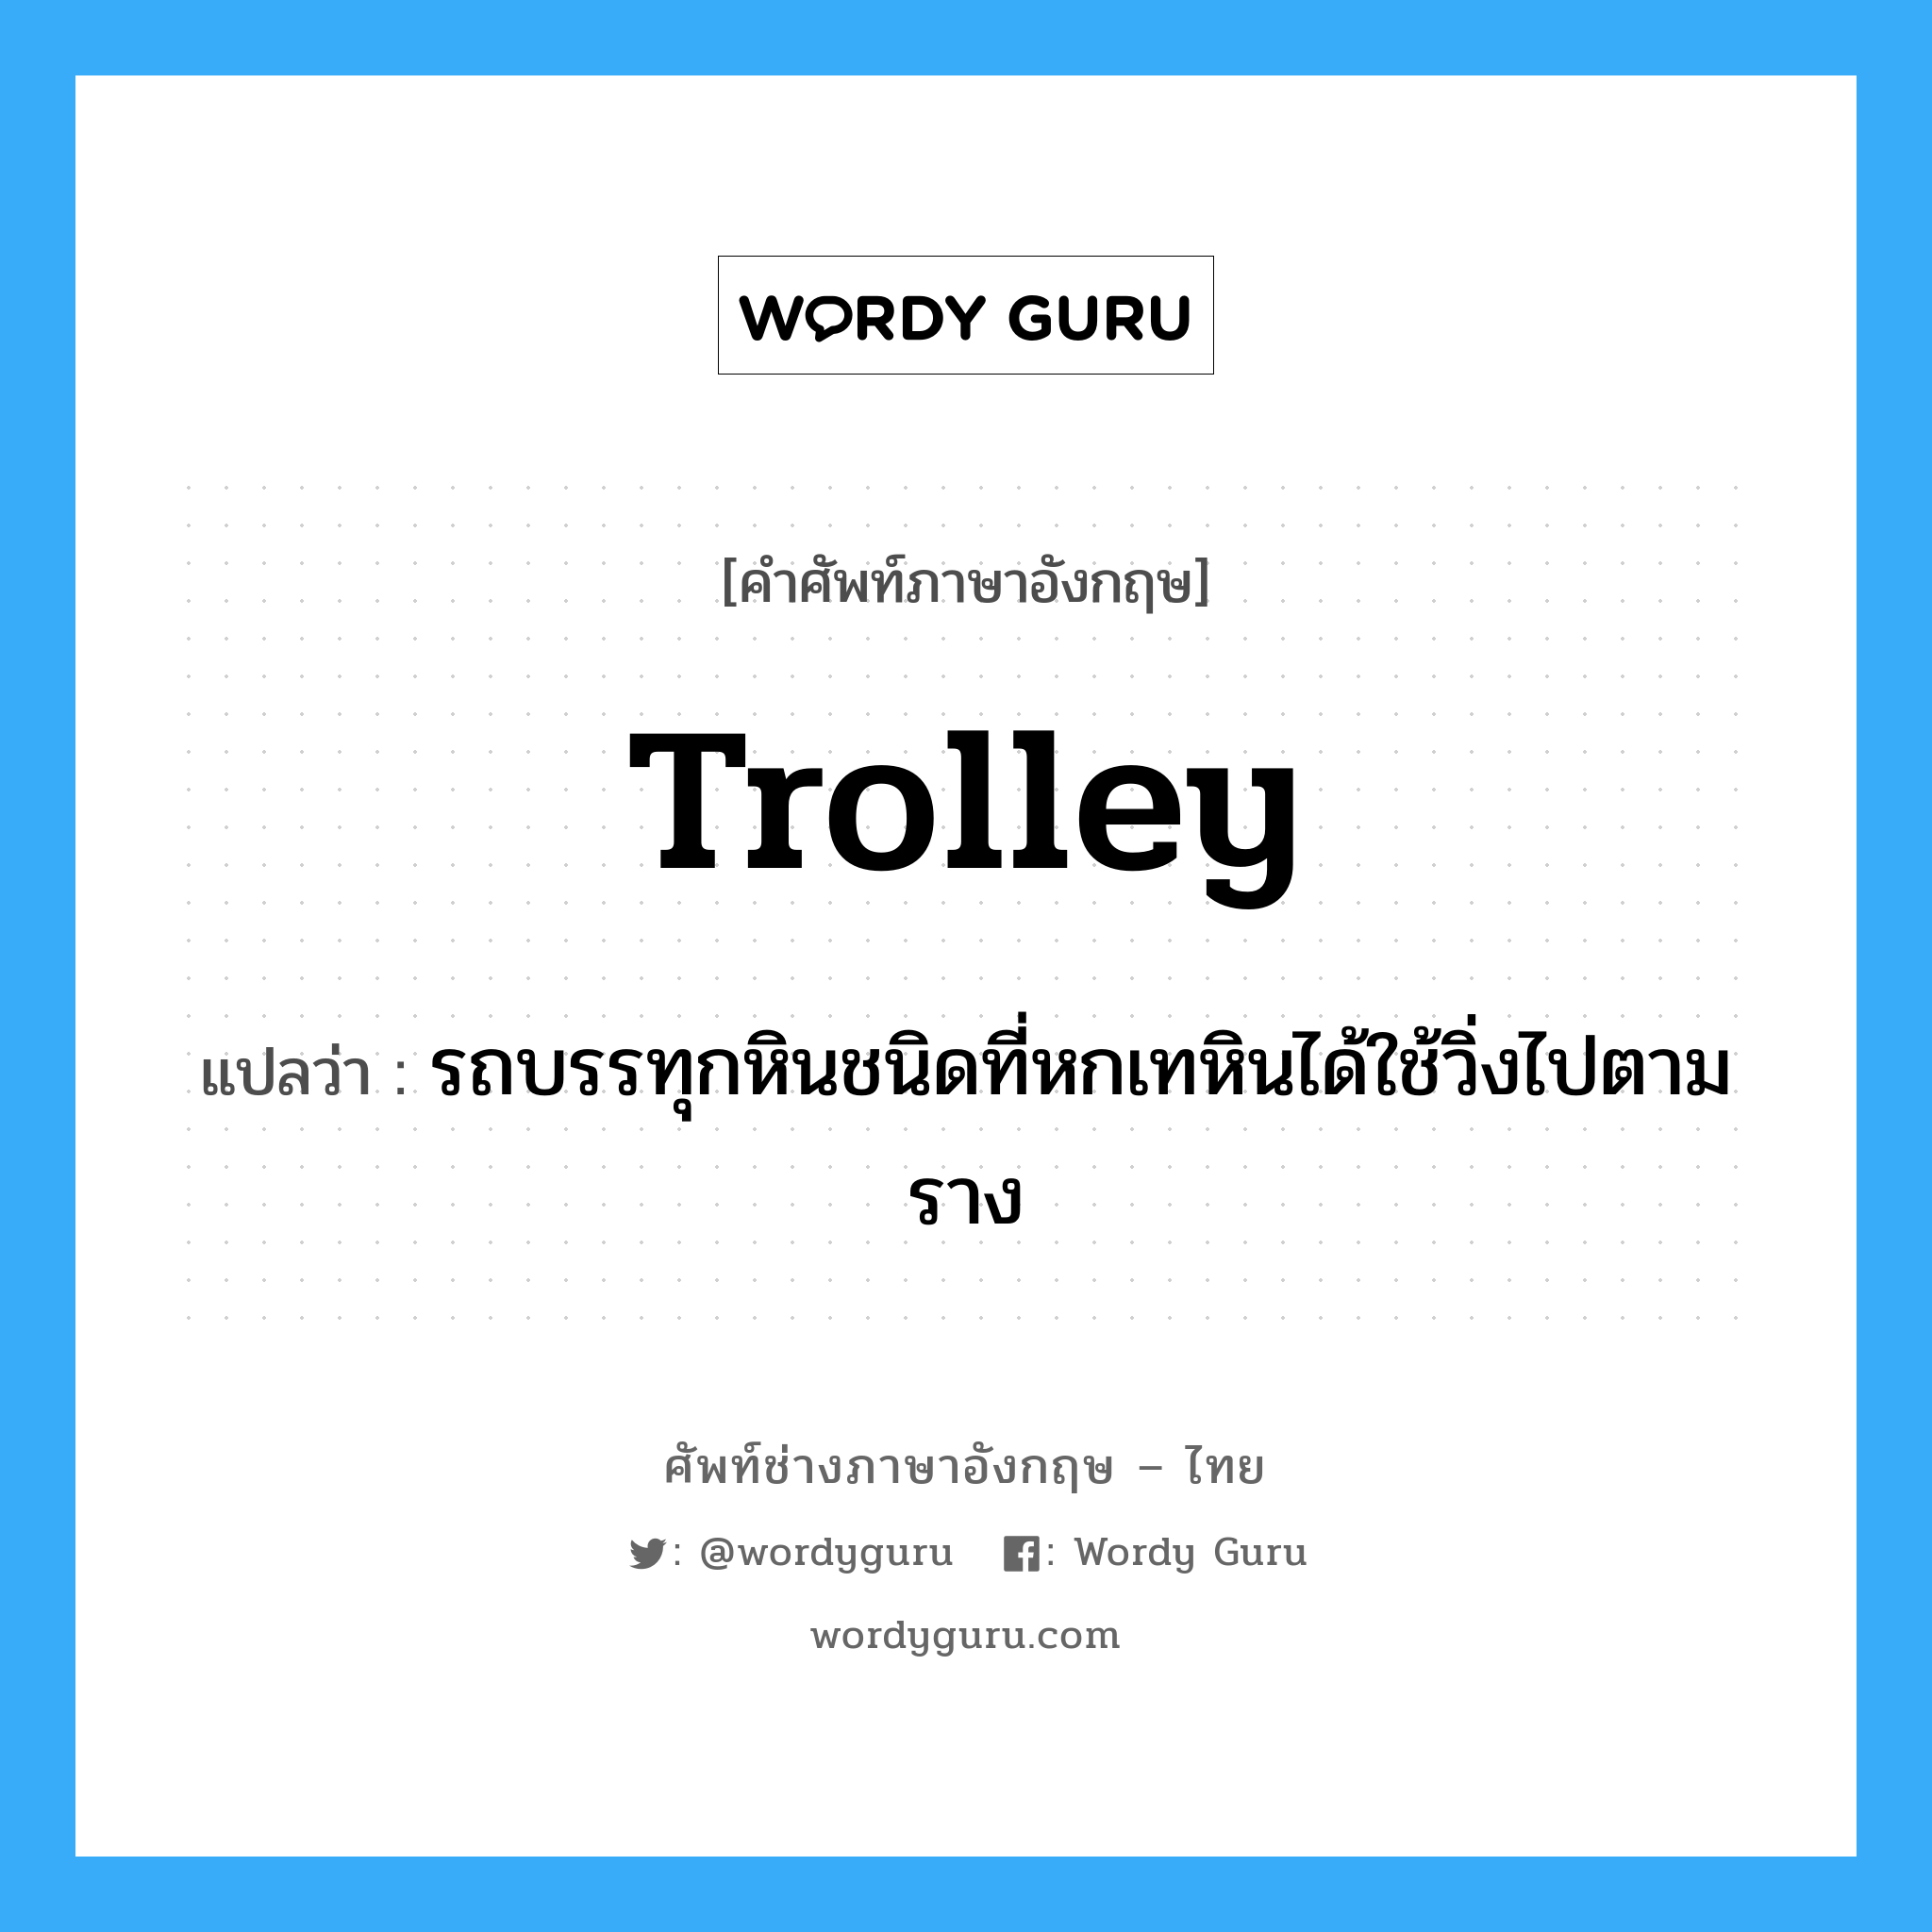 trolley แปลว่า?, คำศัพท์ช่างภาษาอังกฤษ - ไทย trolley คำศัพท์ภาษาอังกฤษ trolley แปลว่า รถบรรทุกหินชนิดที่หกเทหินได้ใช้วิ่งไปตามราง